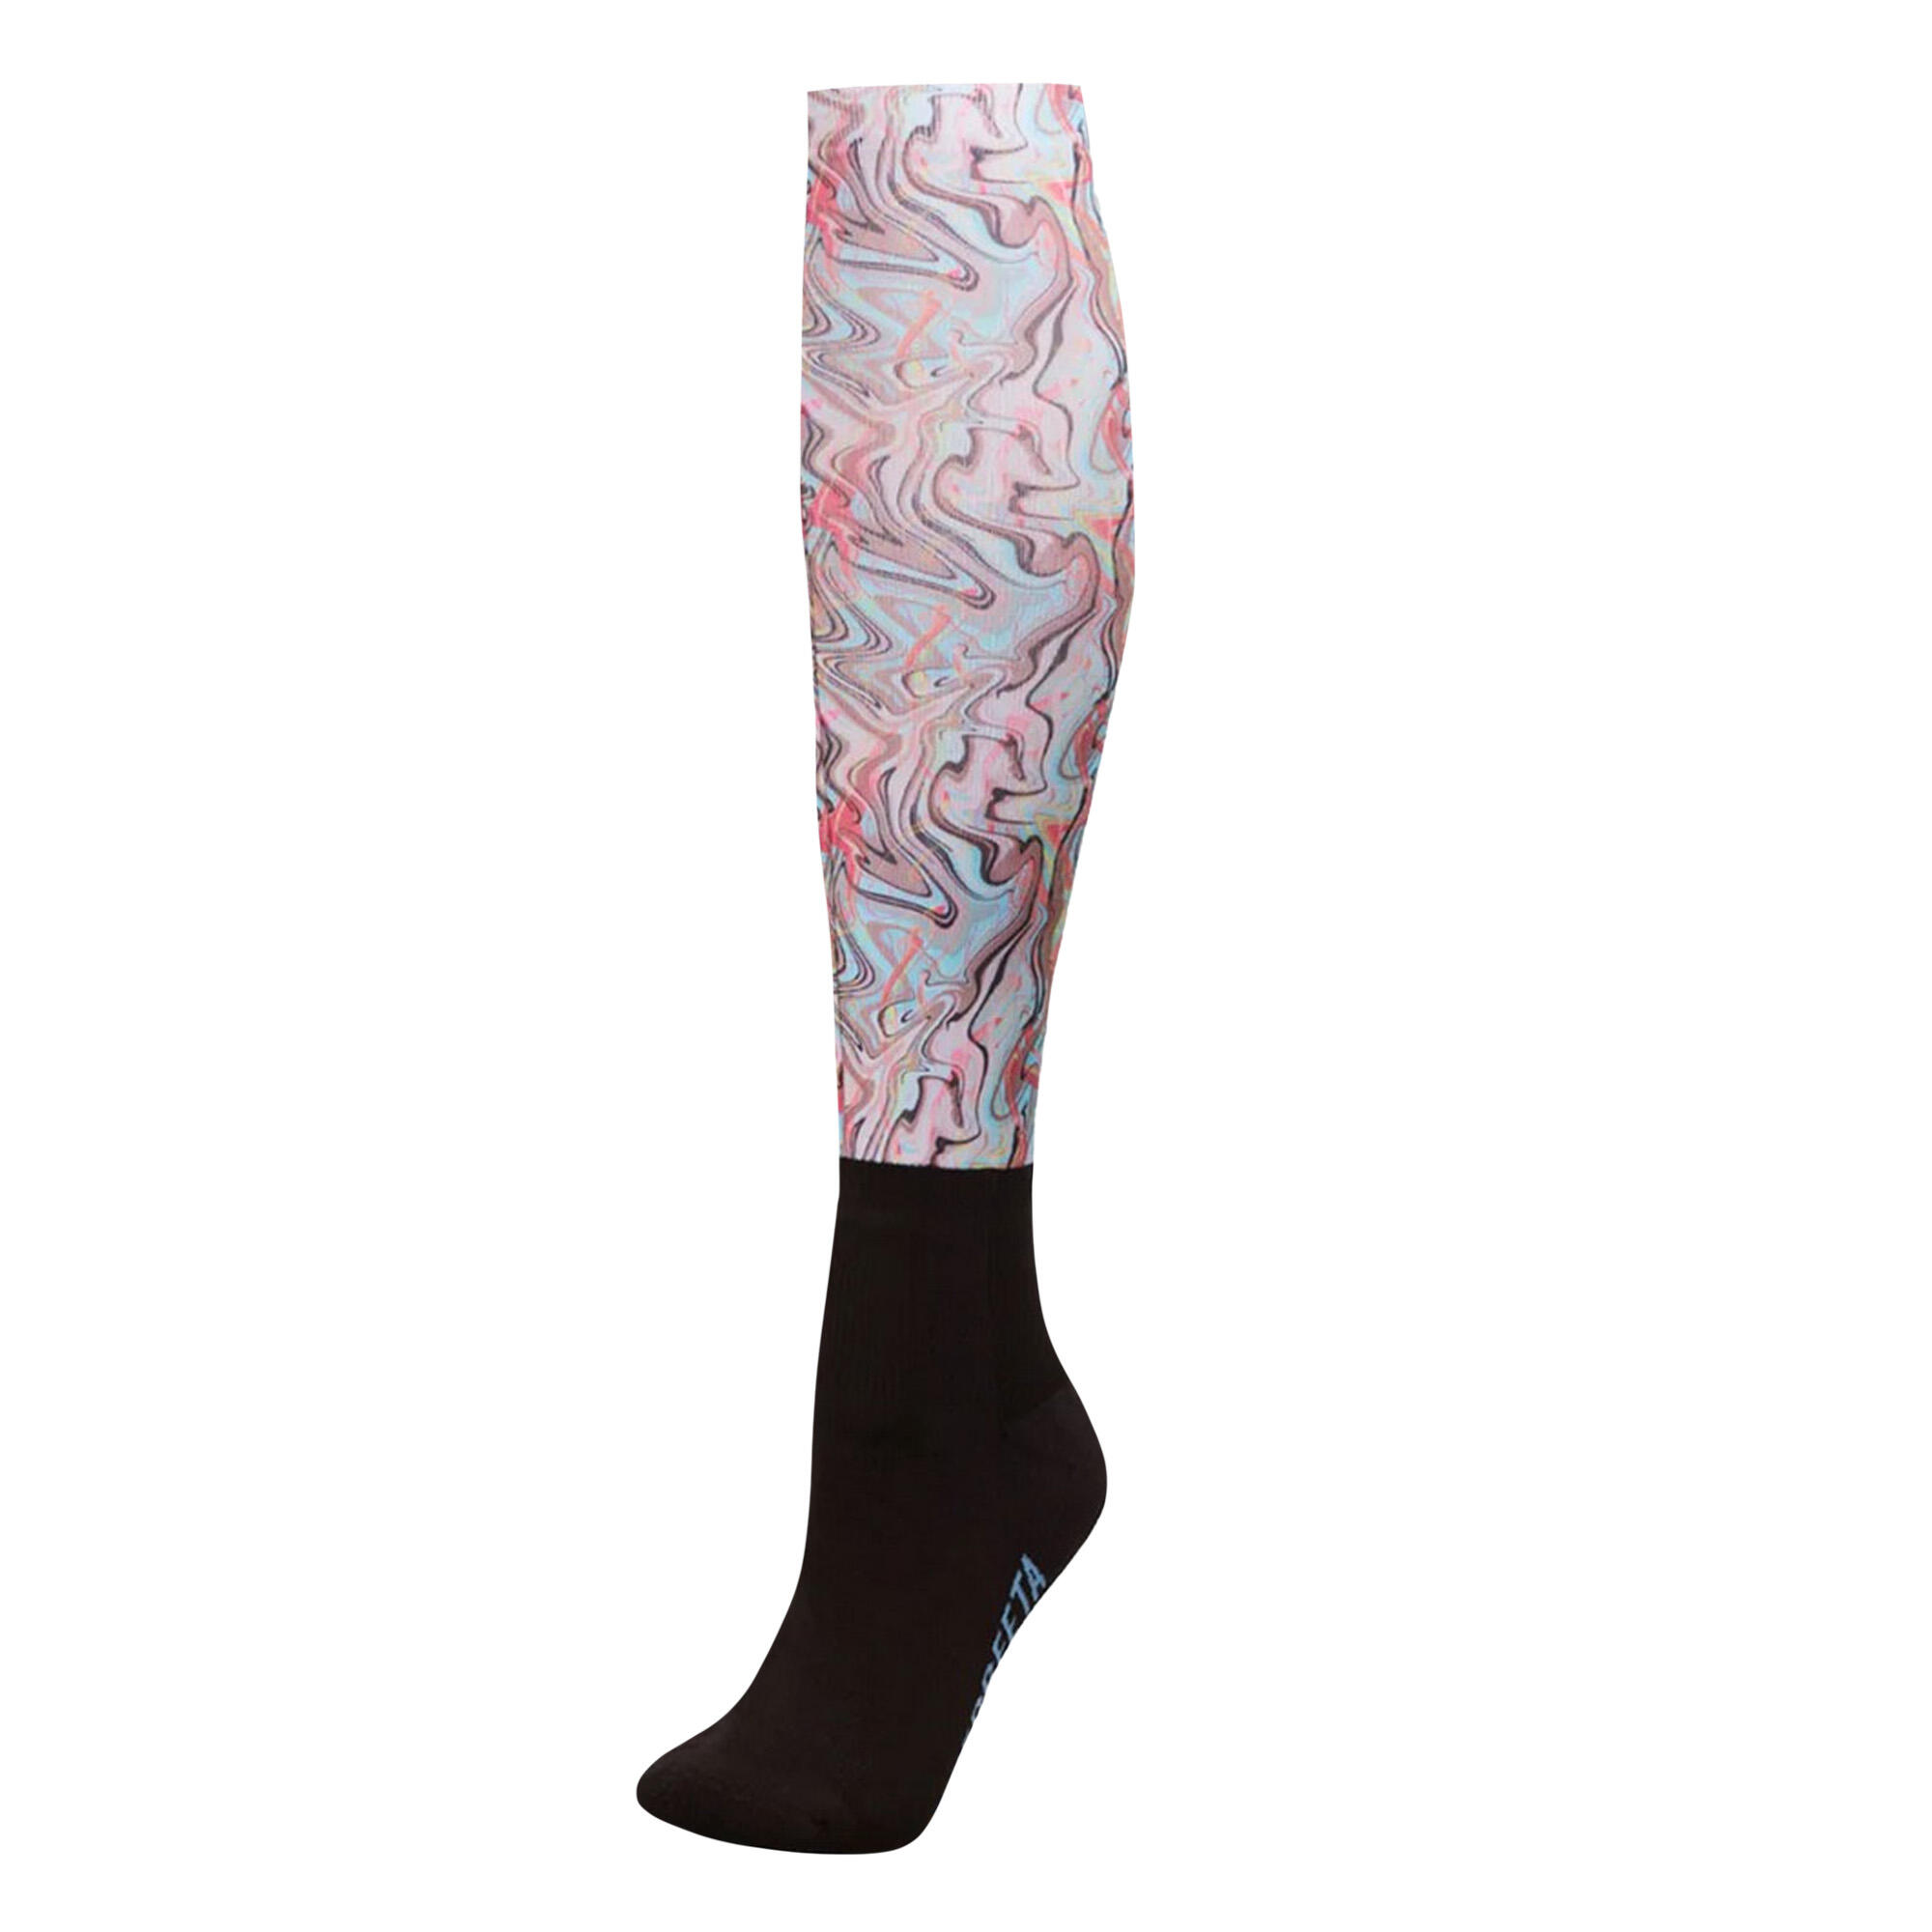 WEATHERBEETA Unisex Adult Swirl Knee High Socks (Aqua)